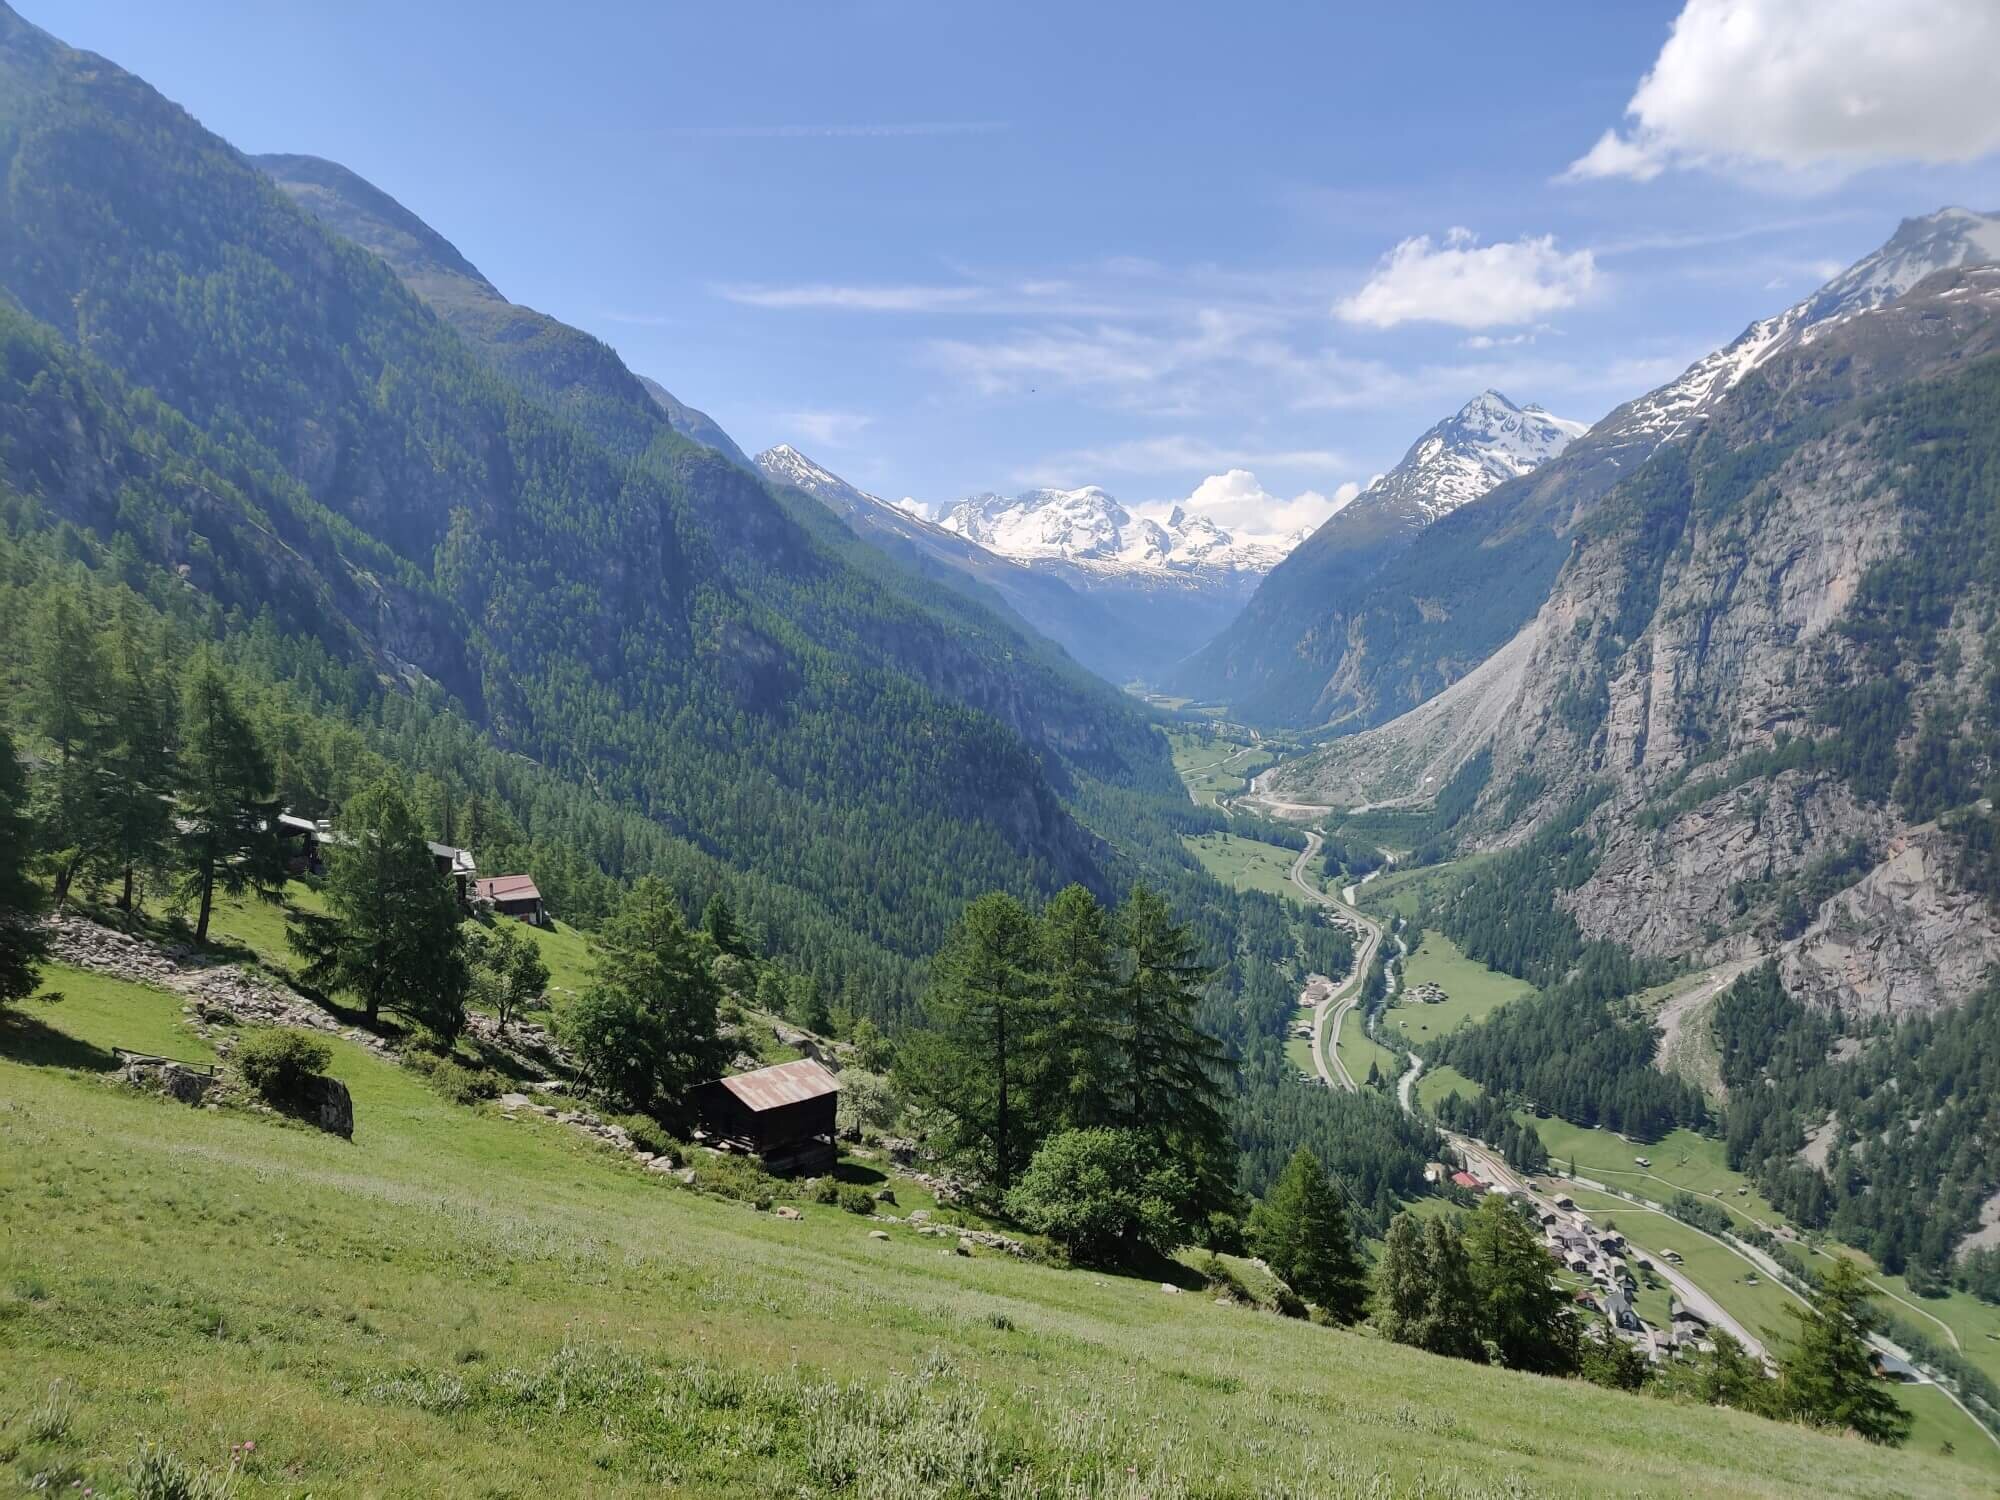 The trail follows the Mattertal Valley floor between St Niklaus and Zermatt